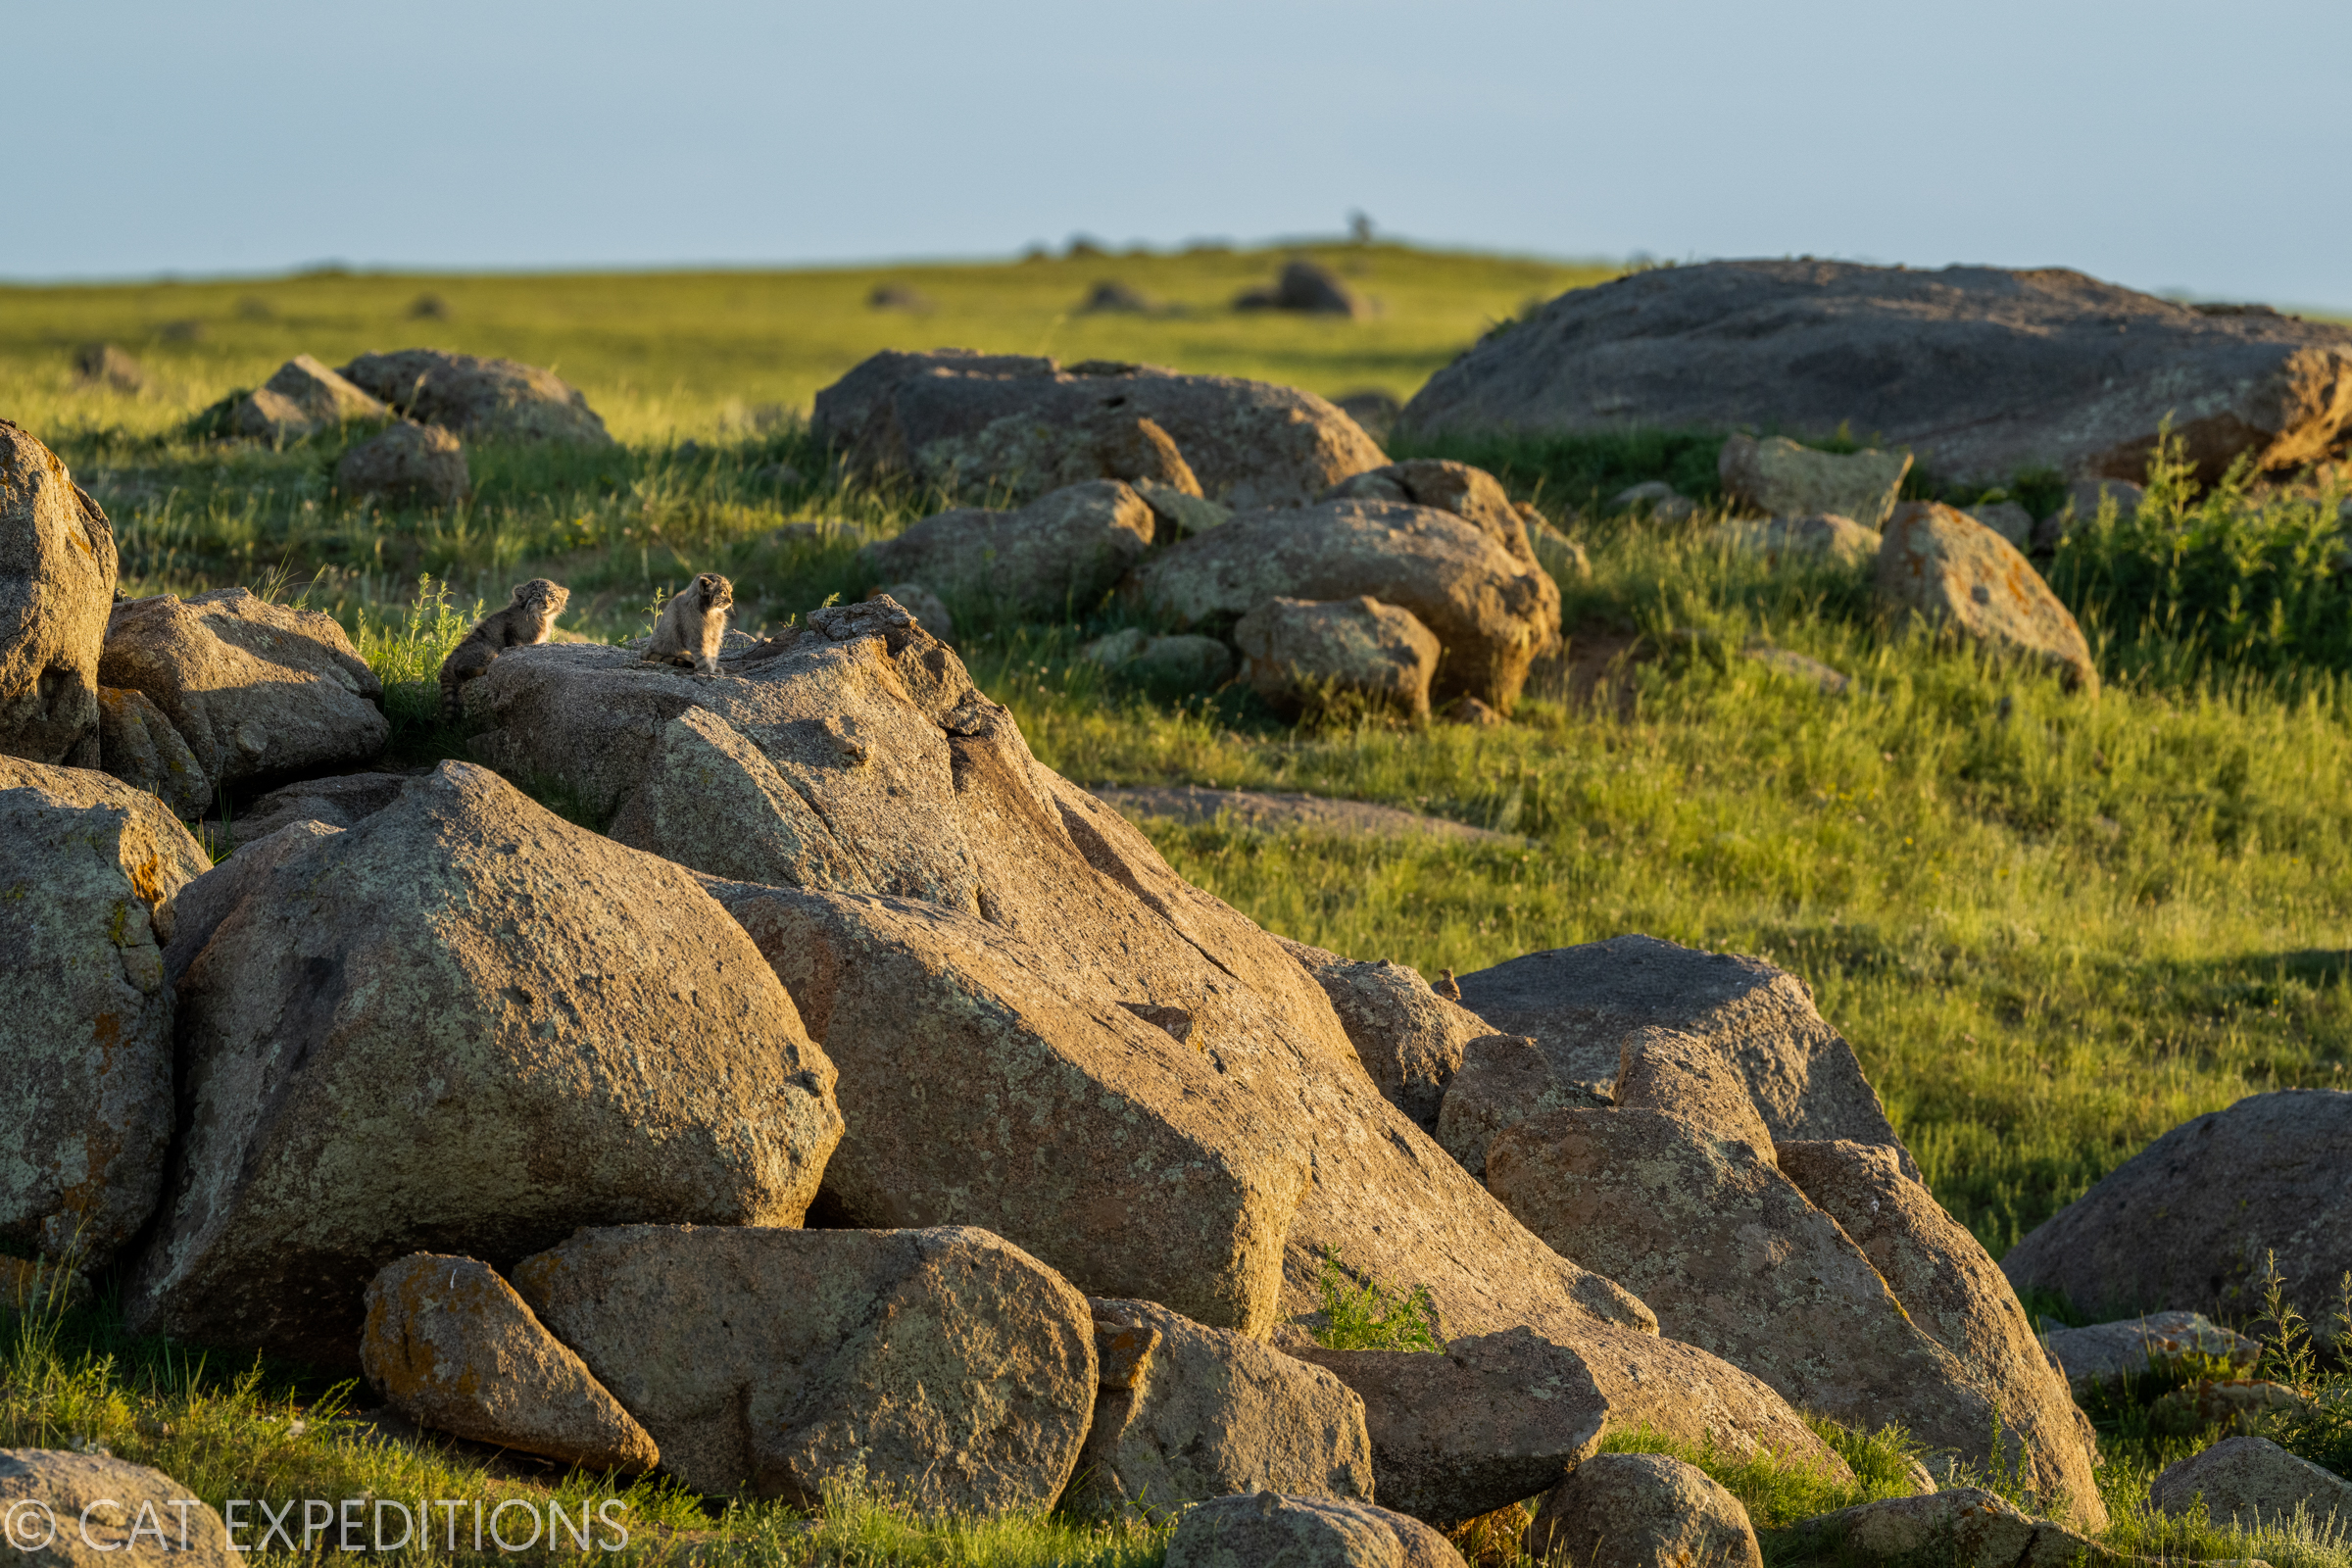 Manul kittens on rocks in Mongolian steppe